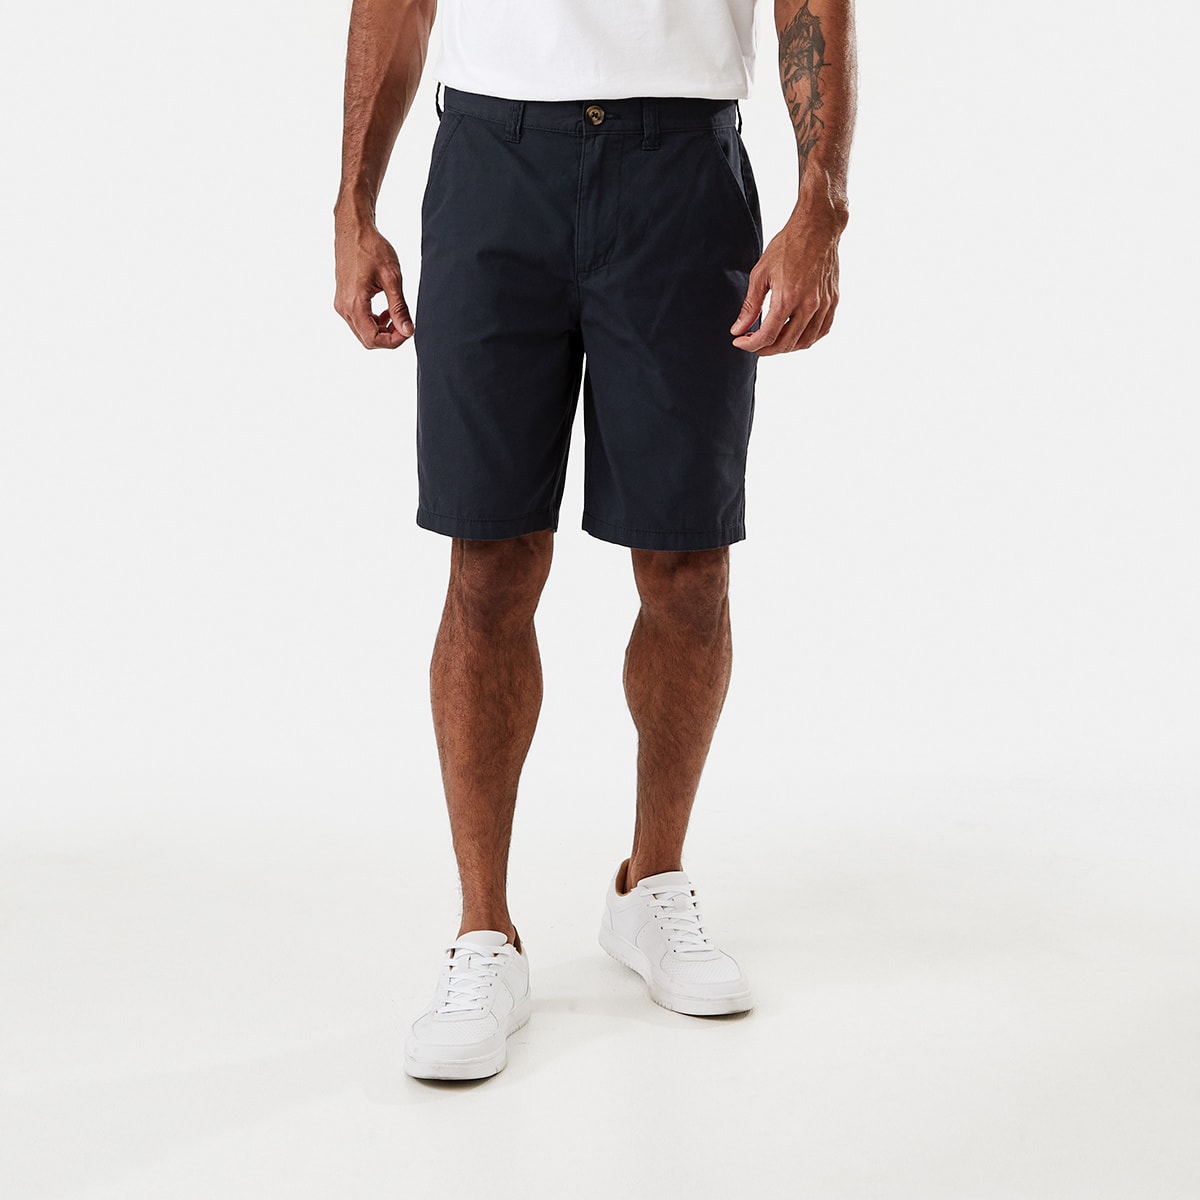 Regular Chino Shorts - Kmart